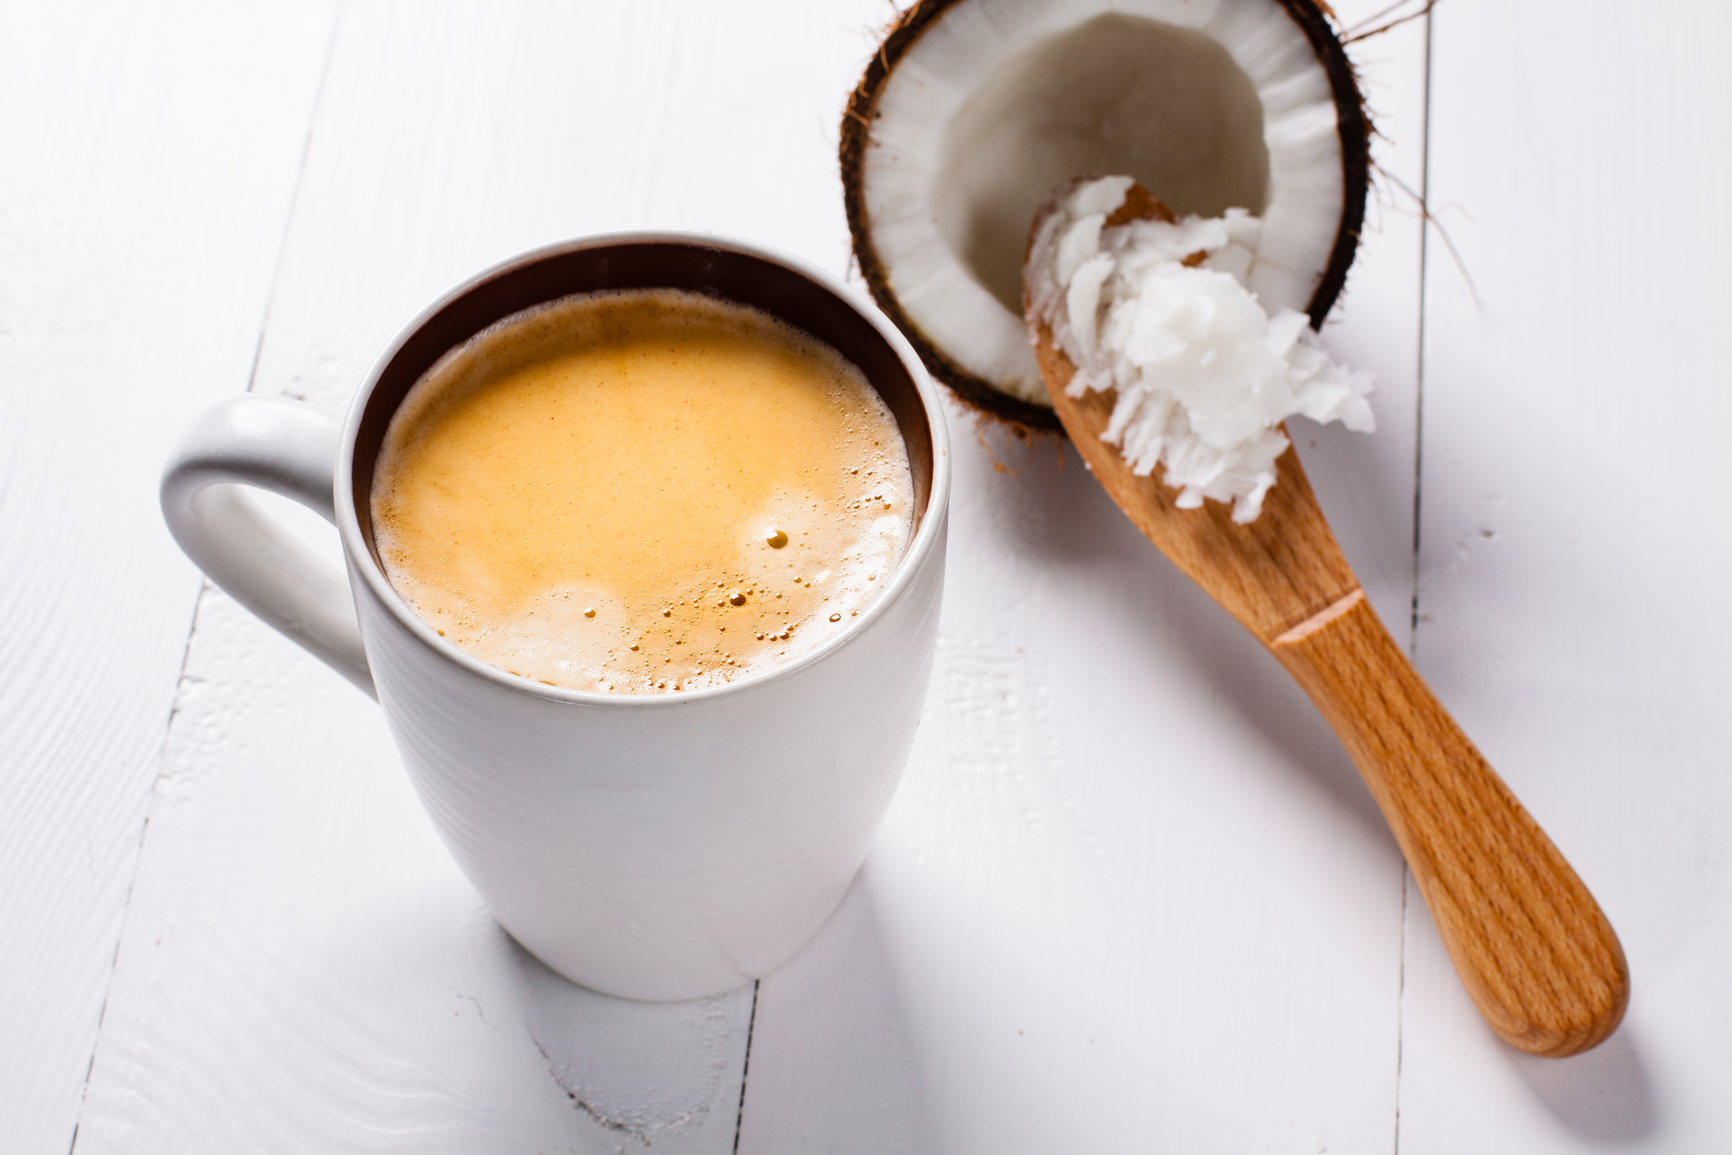 Кофе со сливочным маслом: польза, вред, преимущества, недостатки, рецепты и правила применения